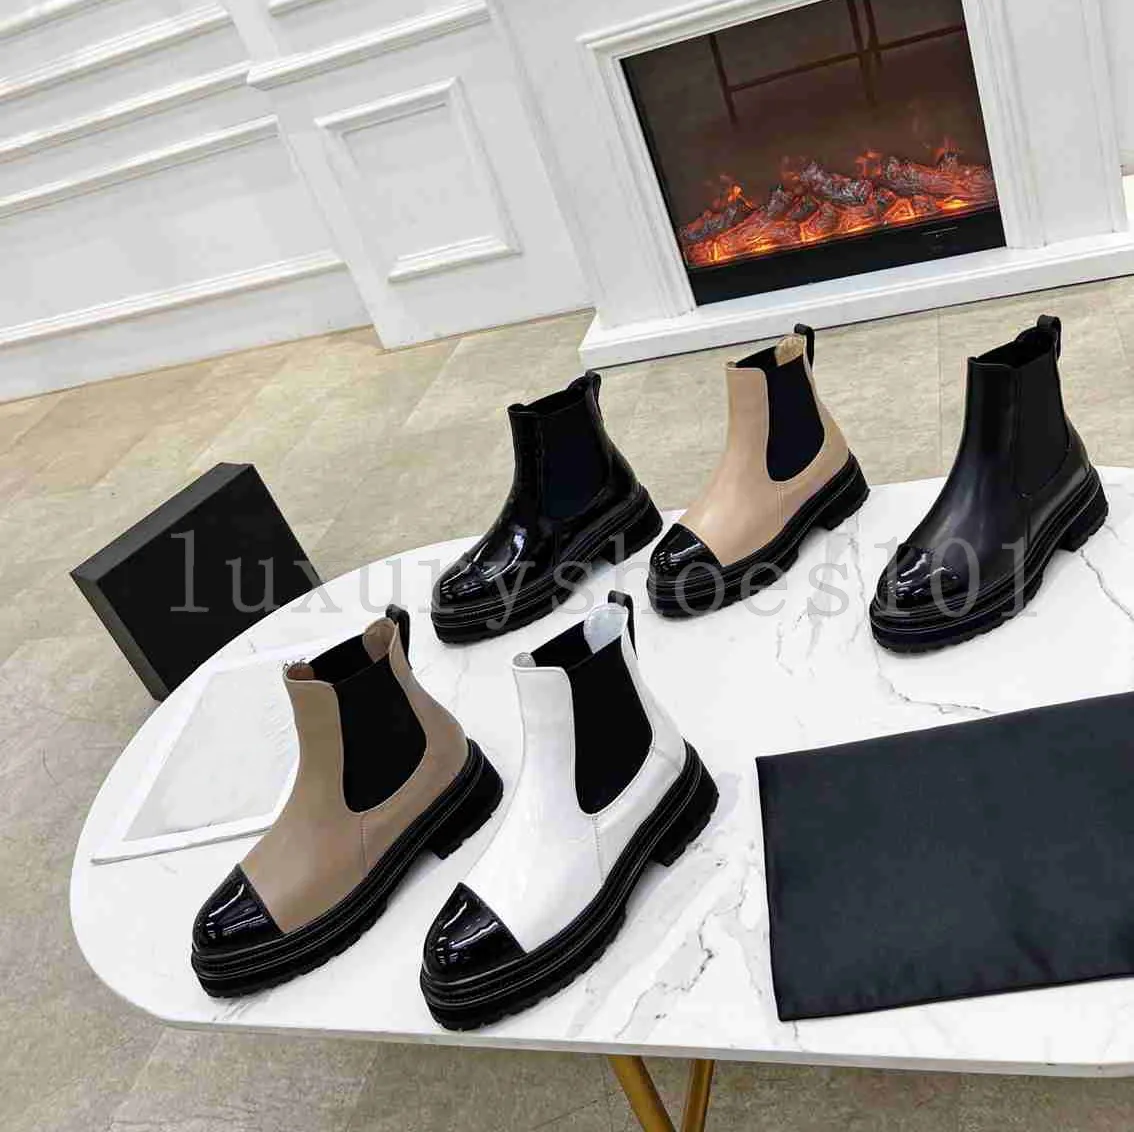 Botas de diseñador de lujo para mujer Botas de tobillo de piel de becerro negras Zapatos planos sin cordones de calidad Botas de motocicleta de moda con apertura ajustable occidental Tamaño 35-40